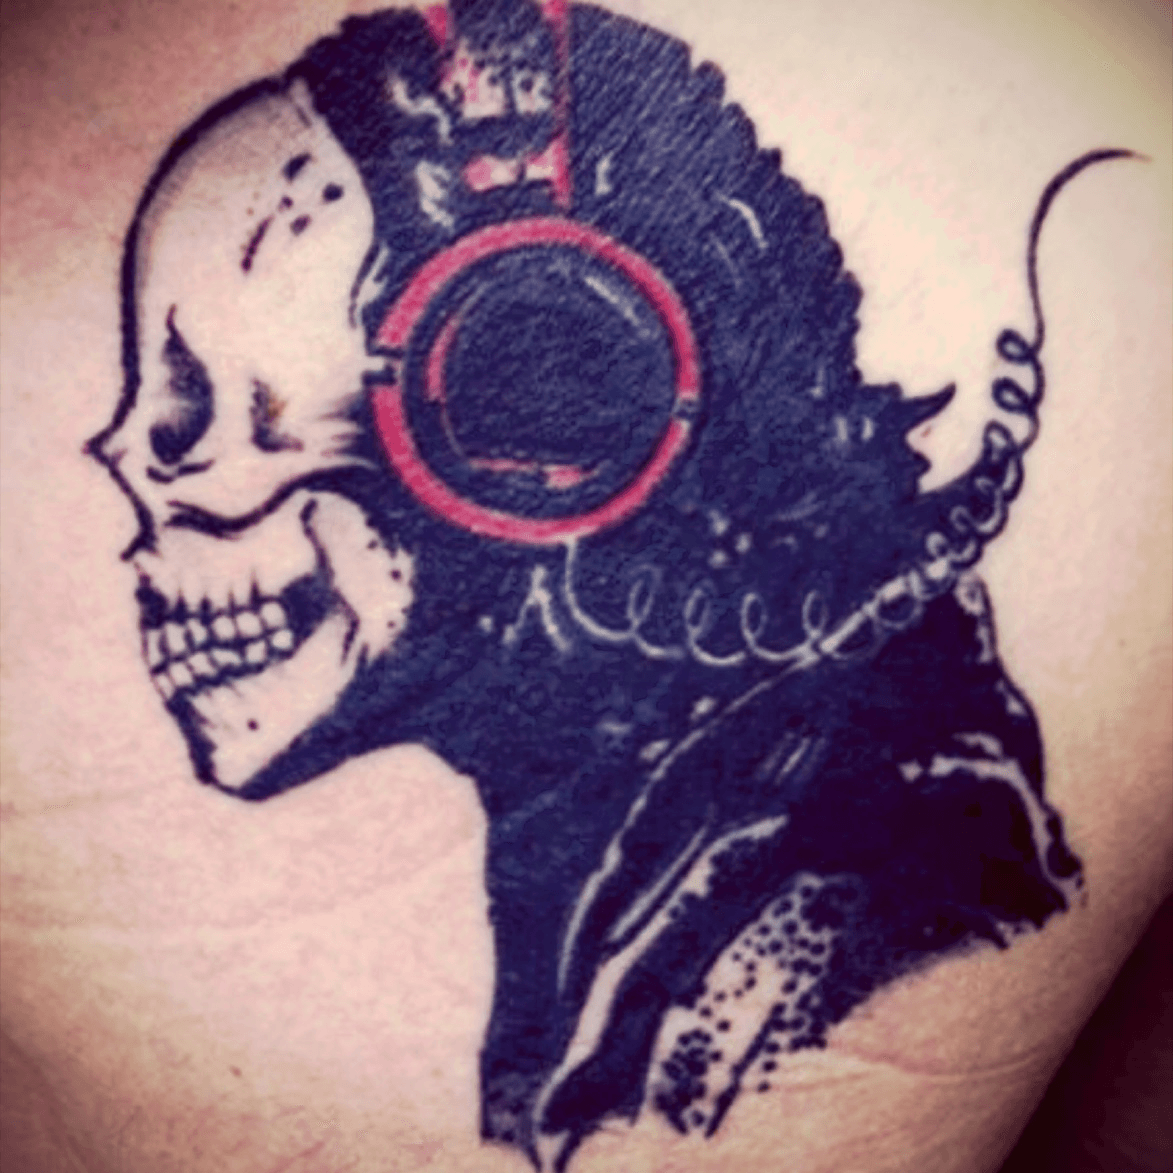 Skull Headphones Tattoo by SamPhillipsNZ on DeviantArt